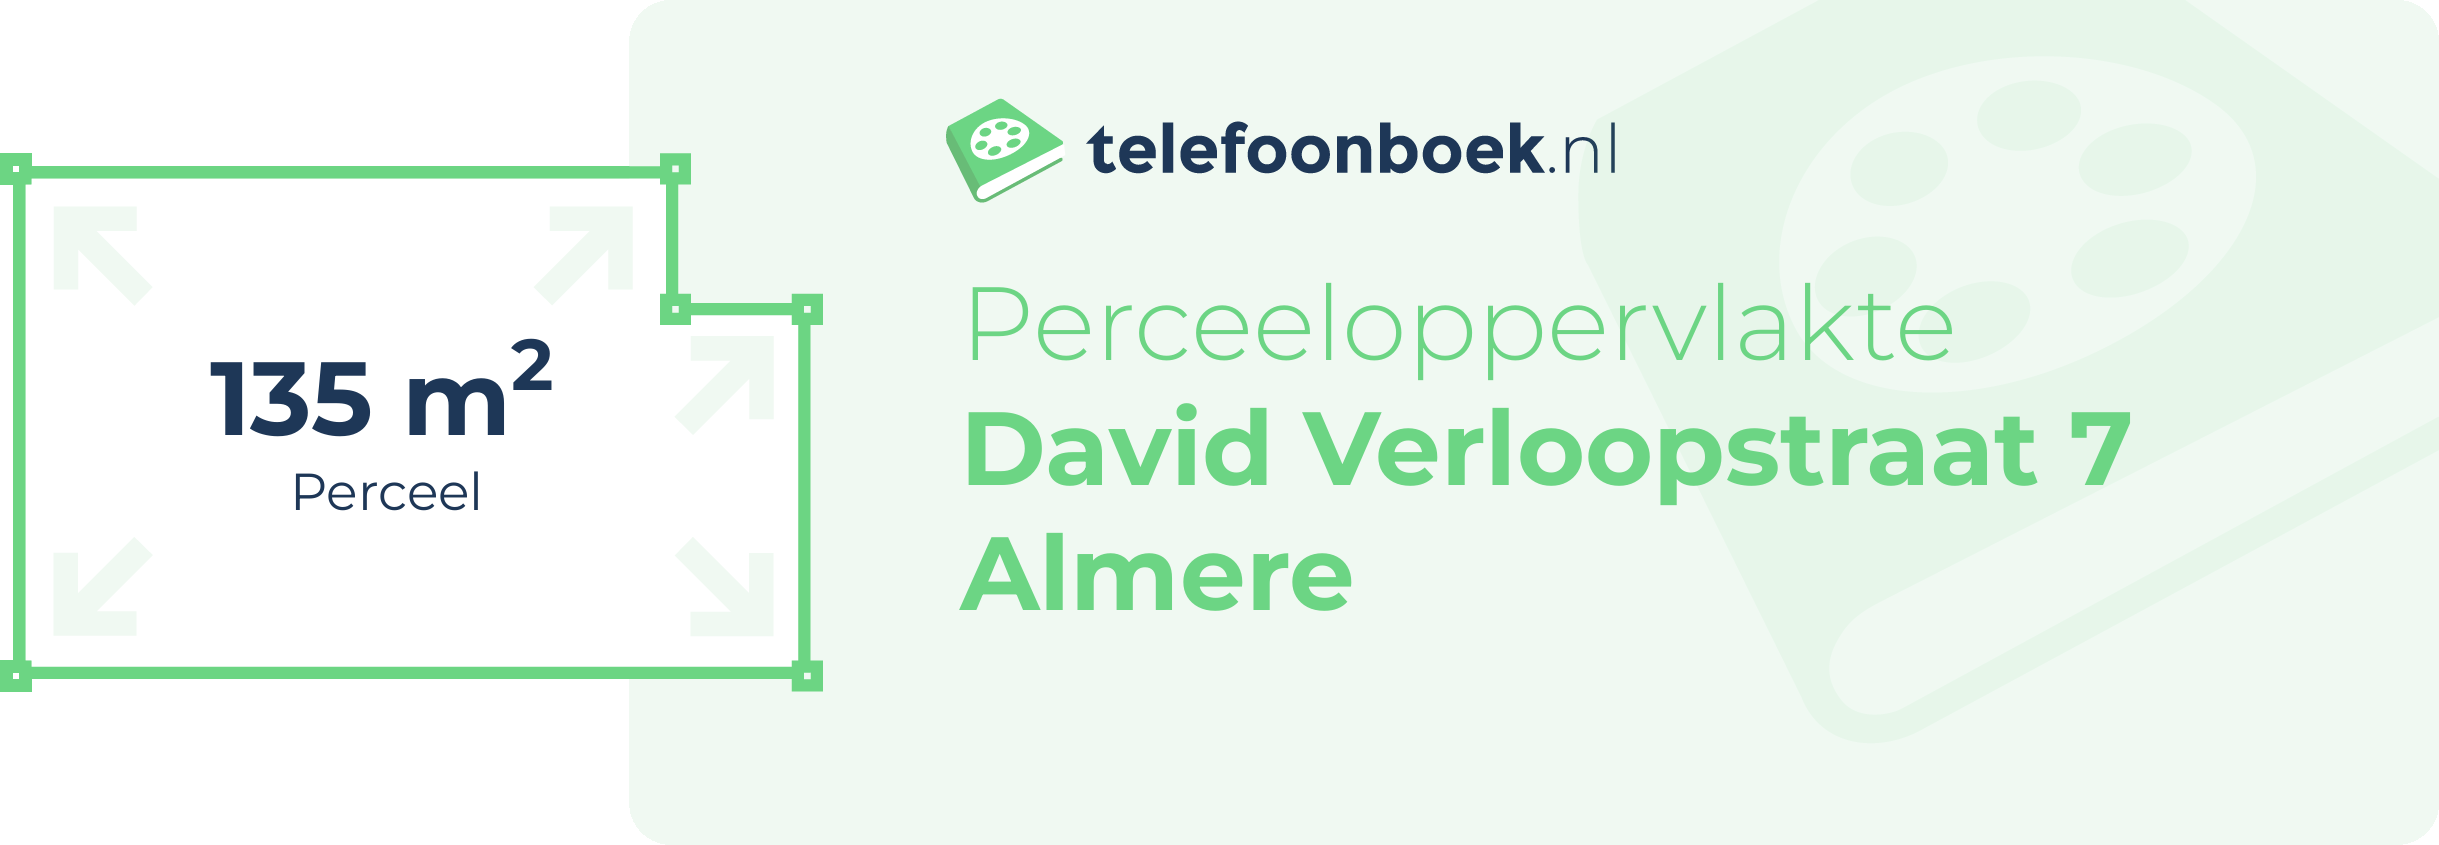 Perceeloppervlakte David Verloopstraat 7 Almere